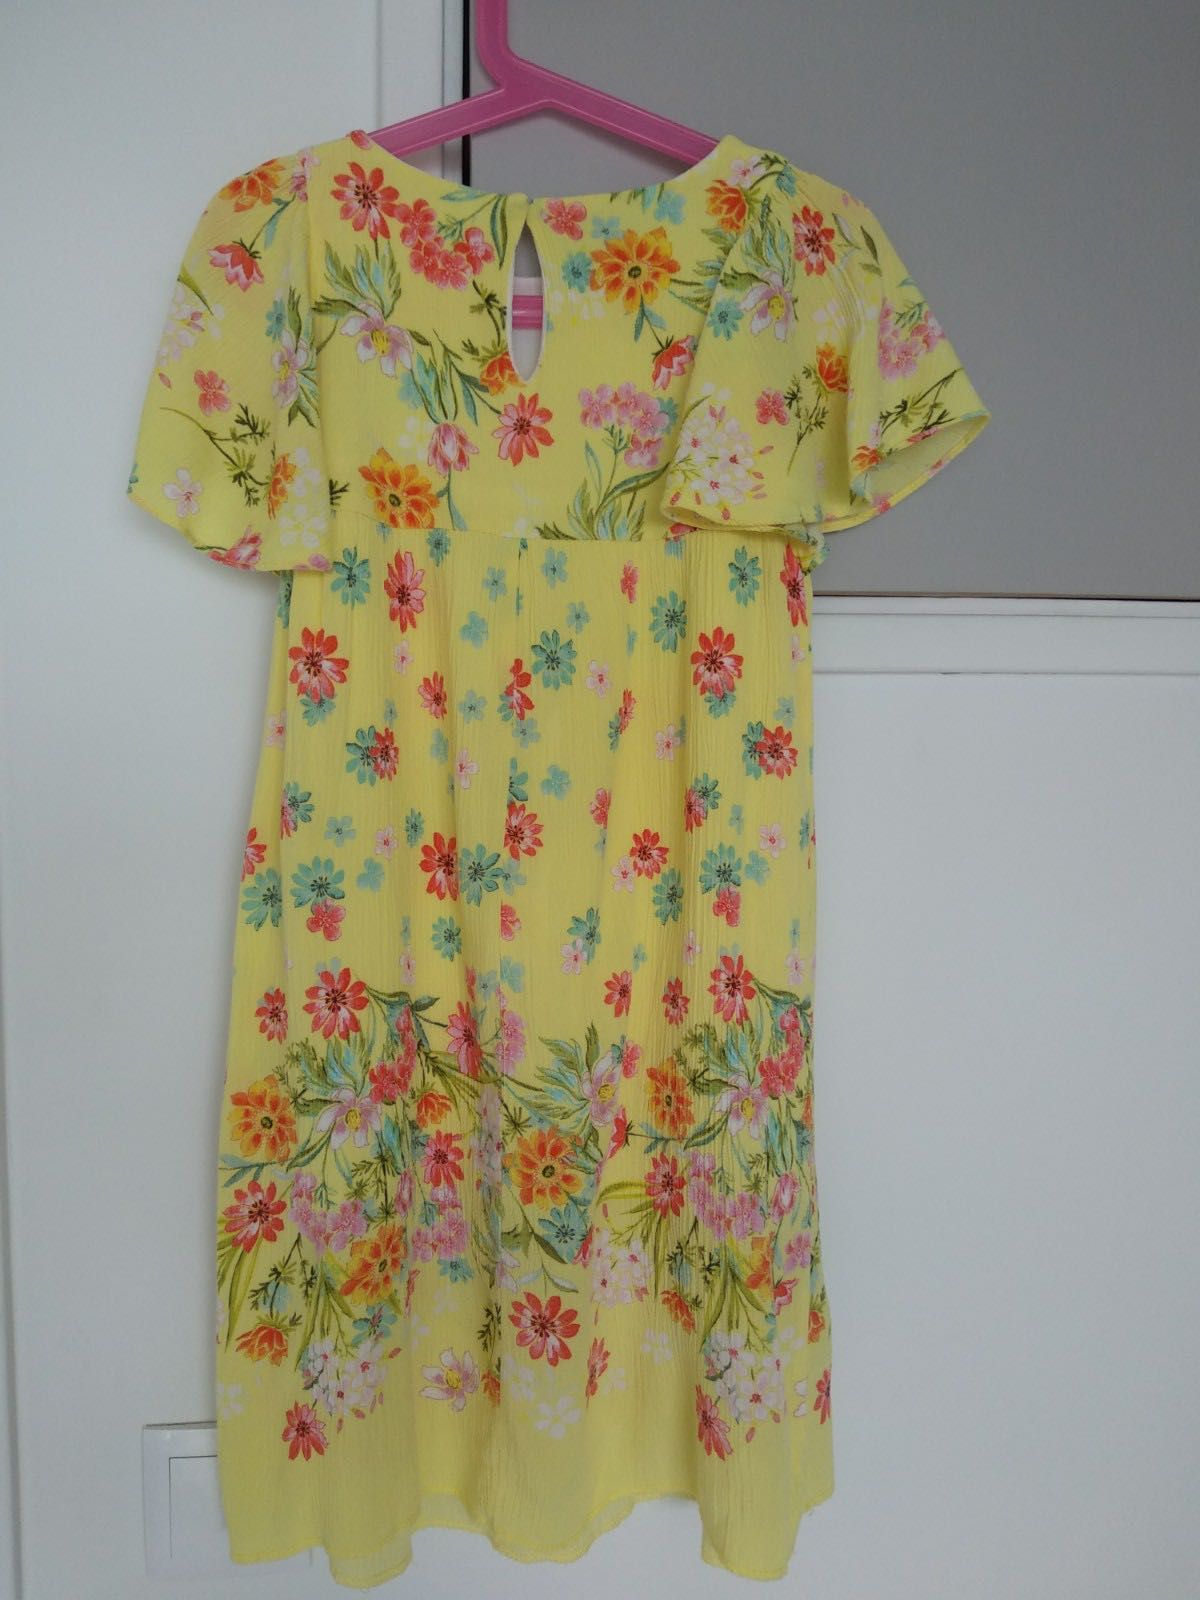 Vestido fluido com estampado floral, para menina, Zara, 5-7 anos